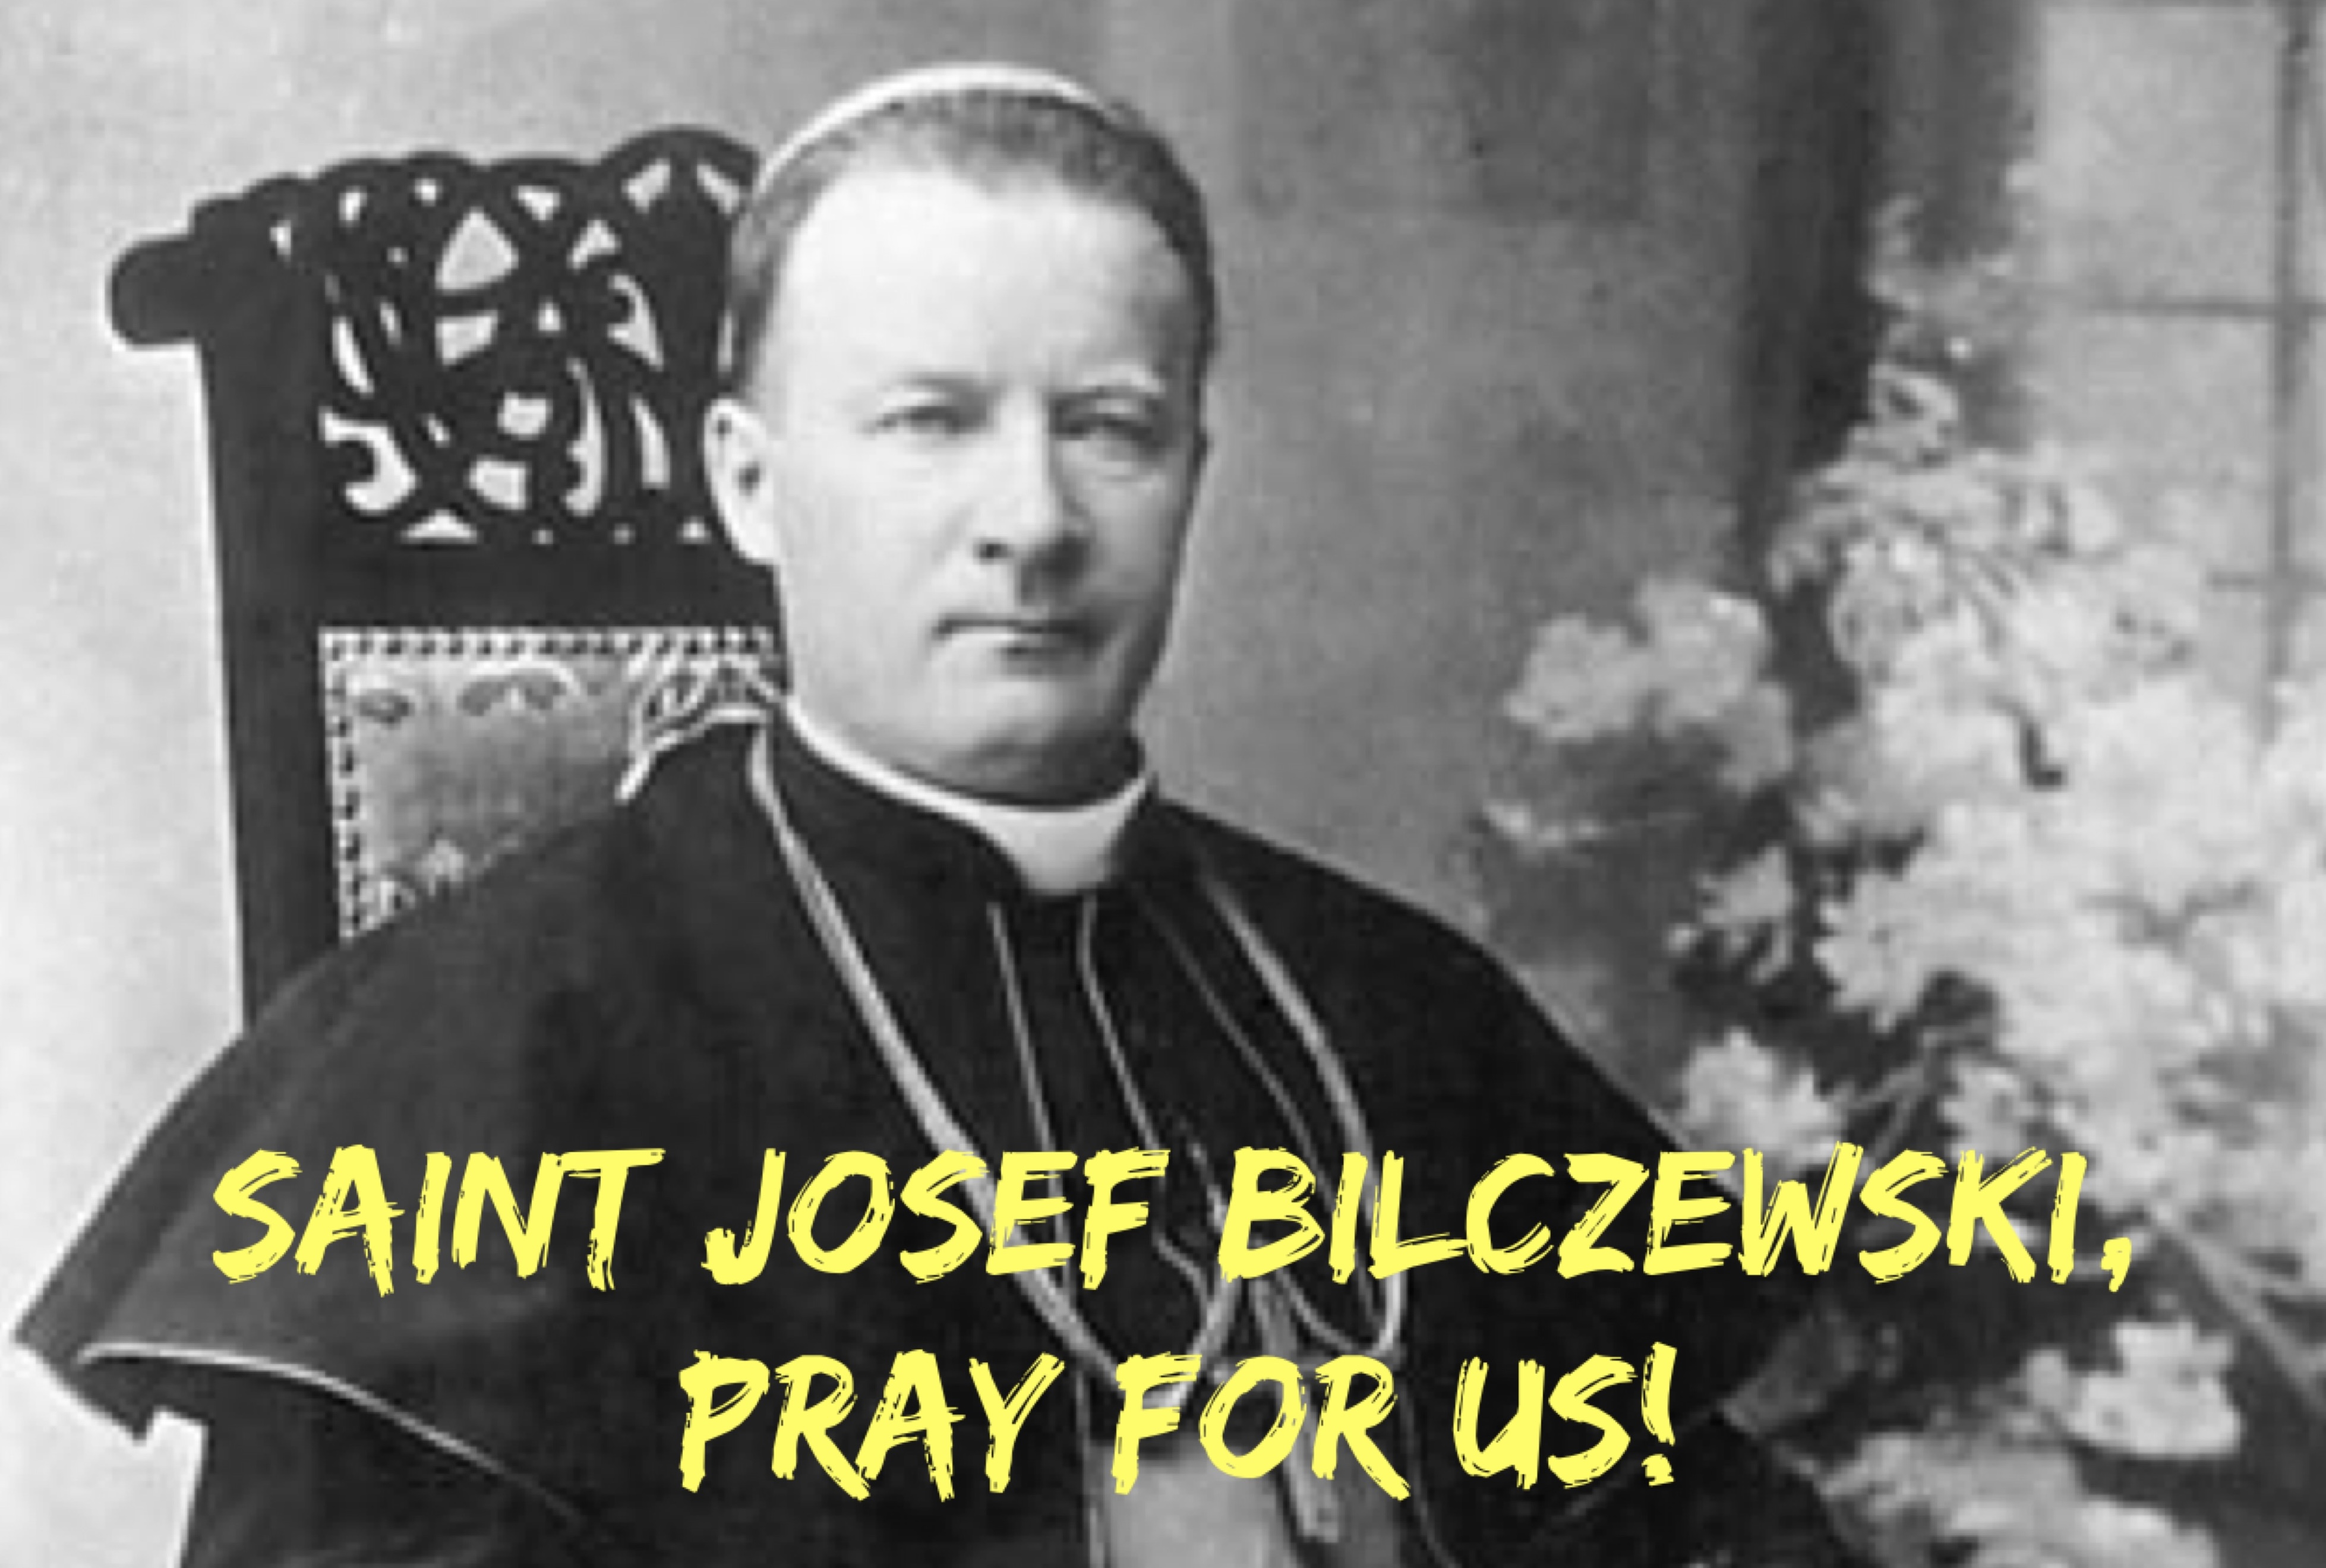 20th March - Saint Josef Bilczewski